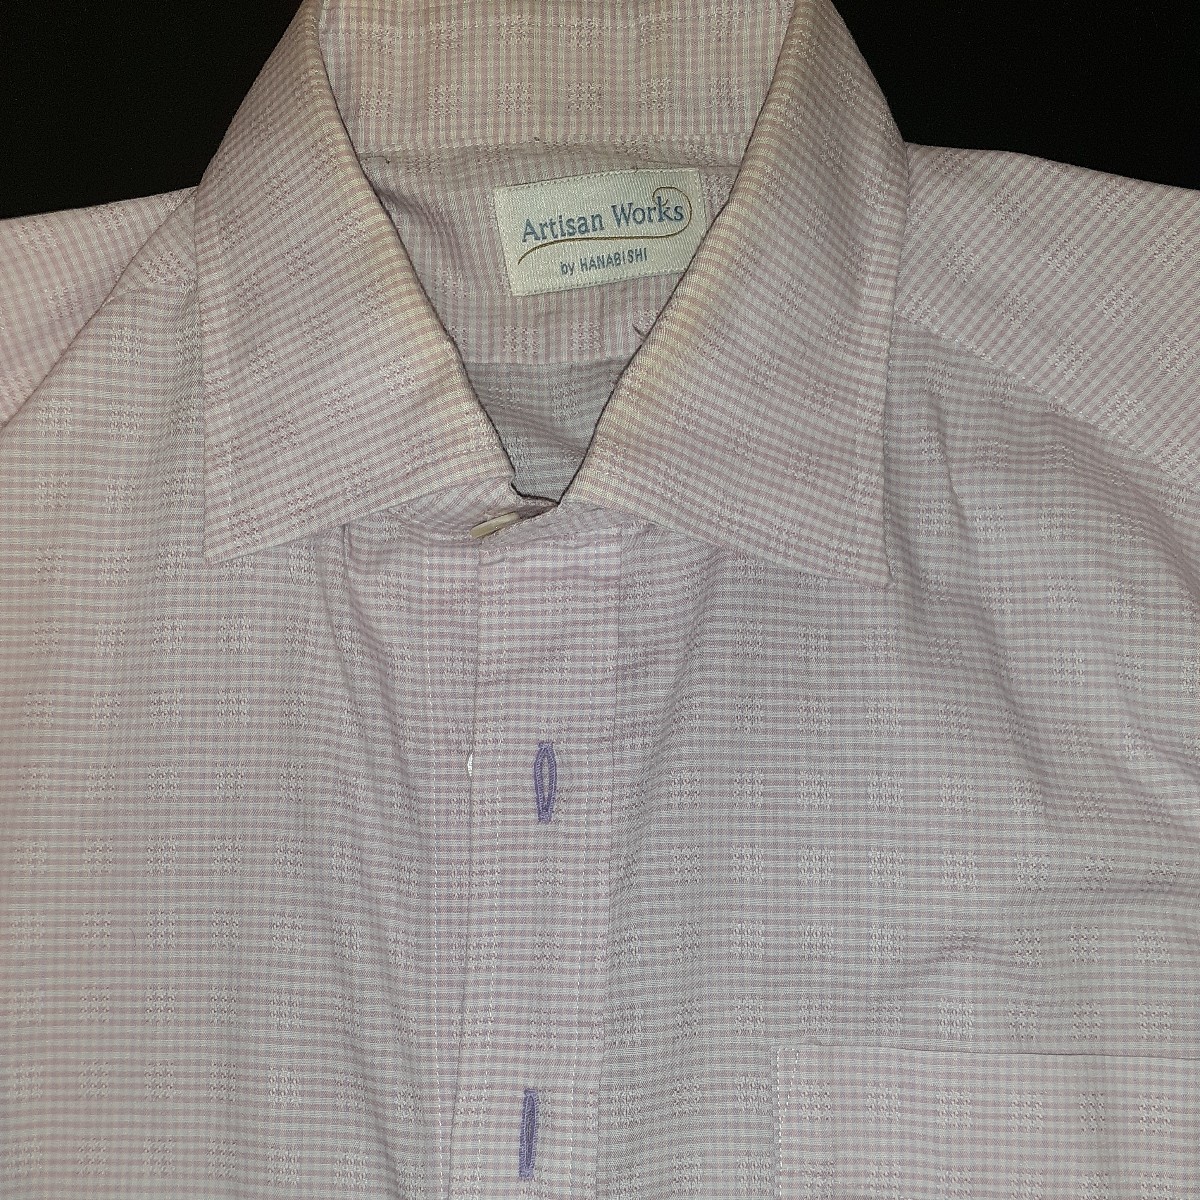 即発送 日本製 高品質 長袖シャツ ビジネス サイズM 薄いピンク色 チェック柄 生地がよいです 綿50% ポリエステル50% 首回り39 袖丈80cm_画像2